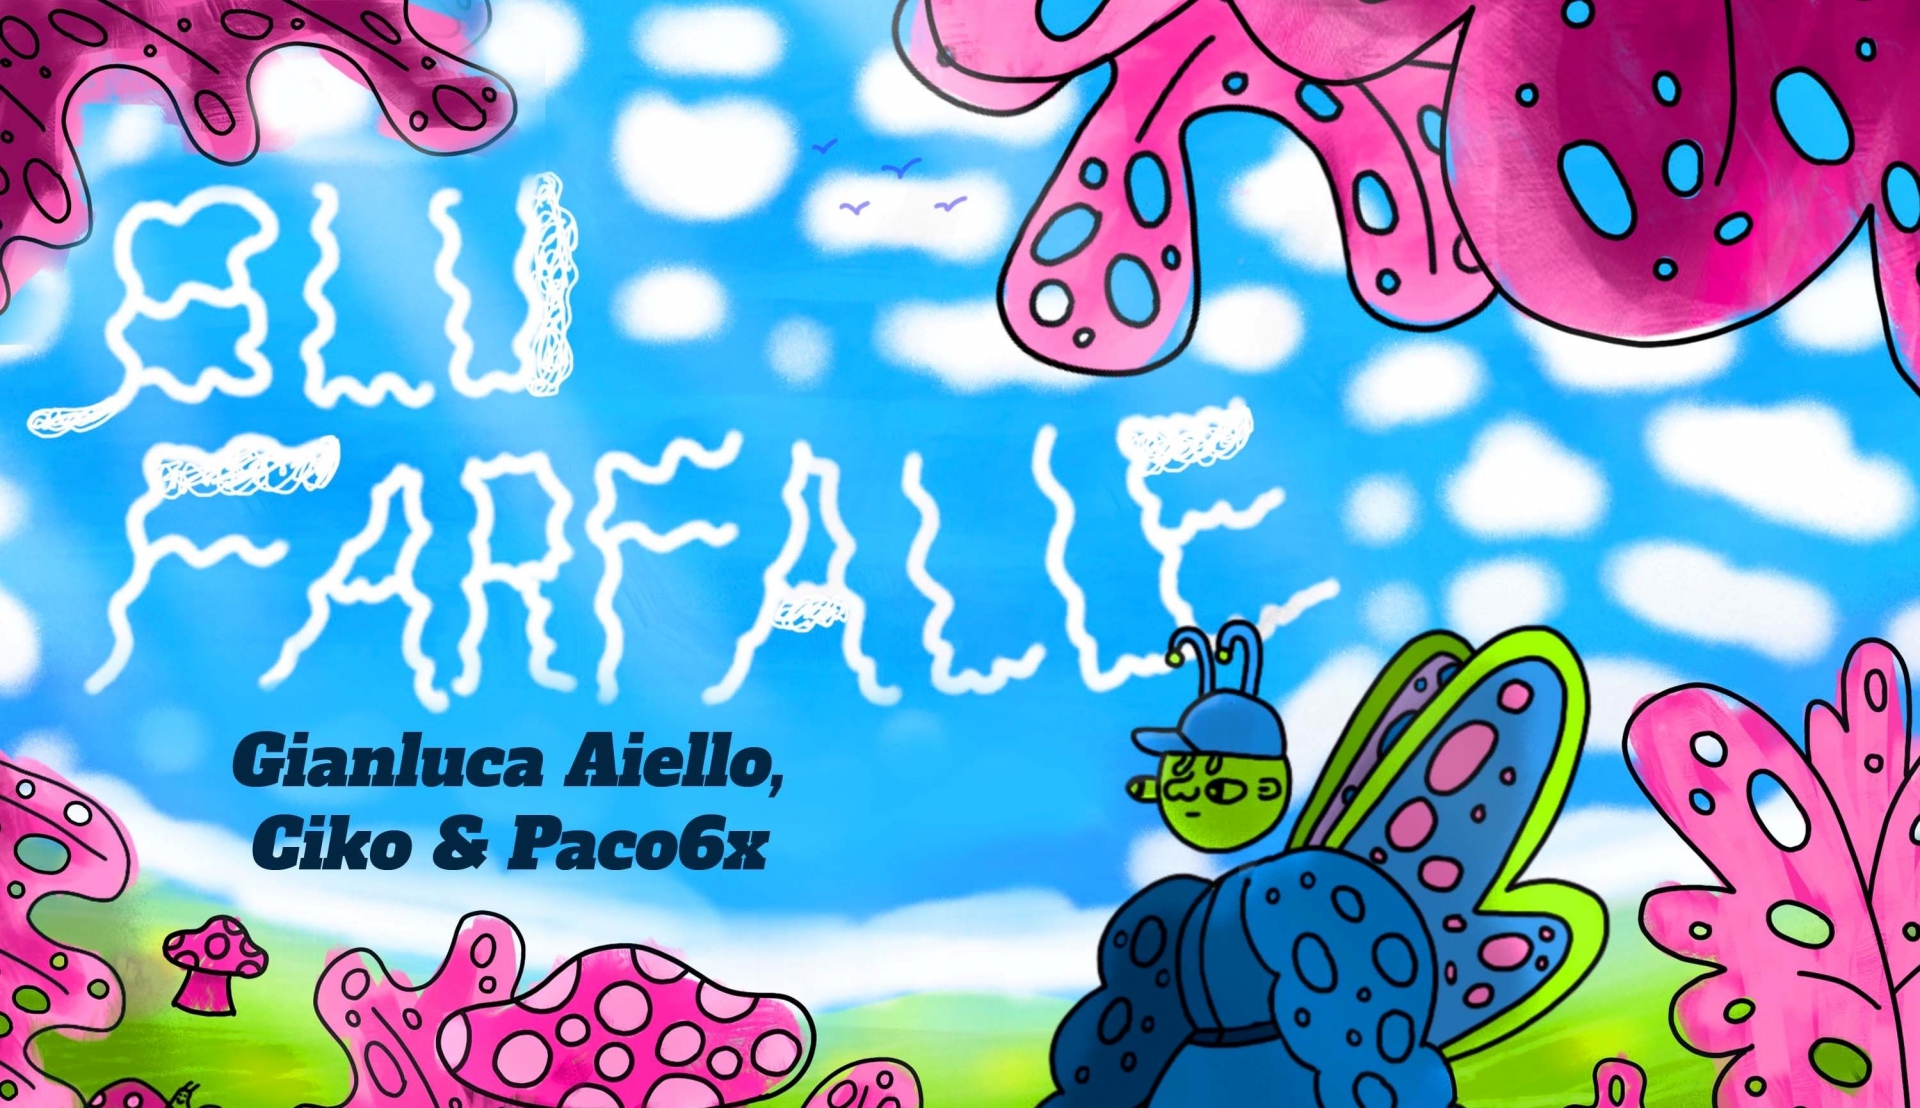 Gianluca Aiello - Ciko e Paco6x: “Blu Farfalle”